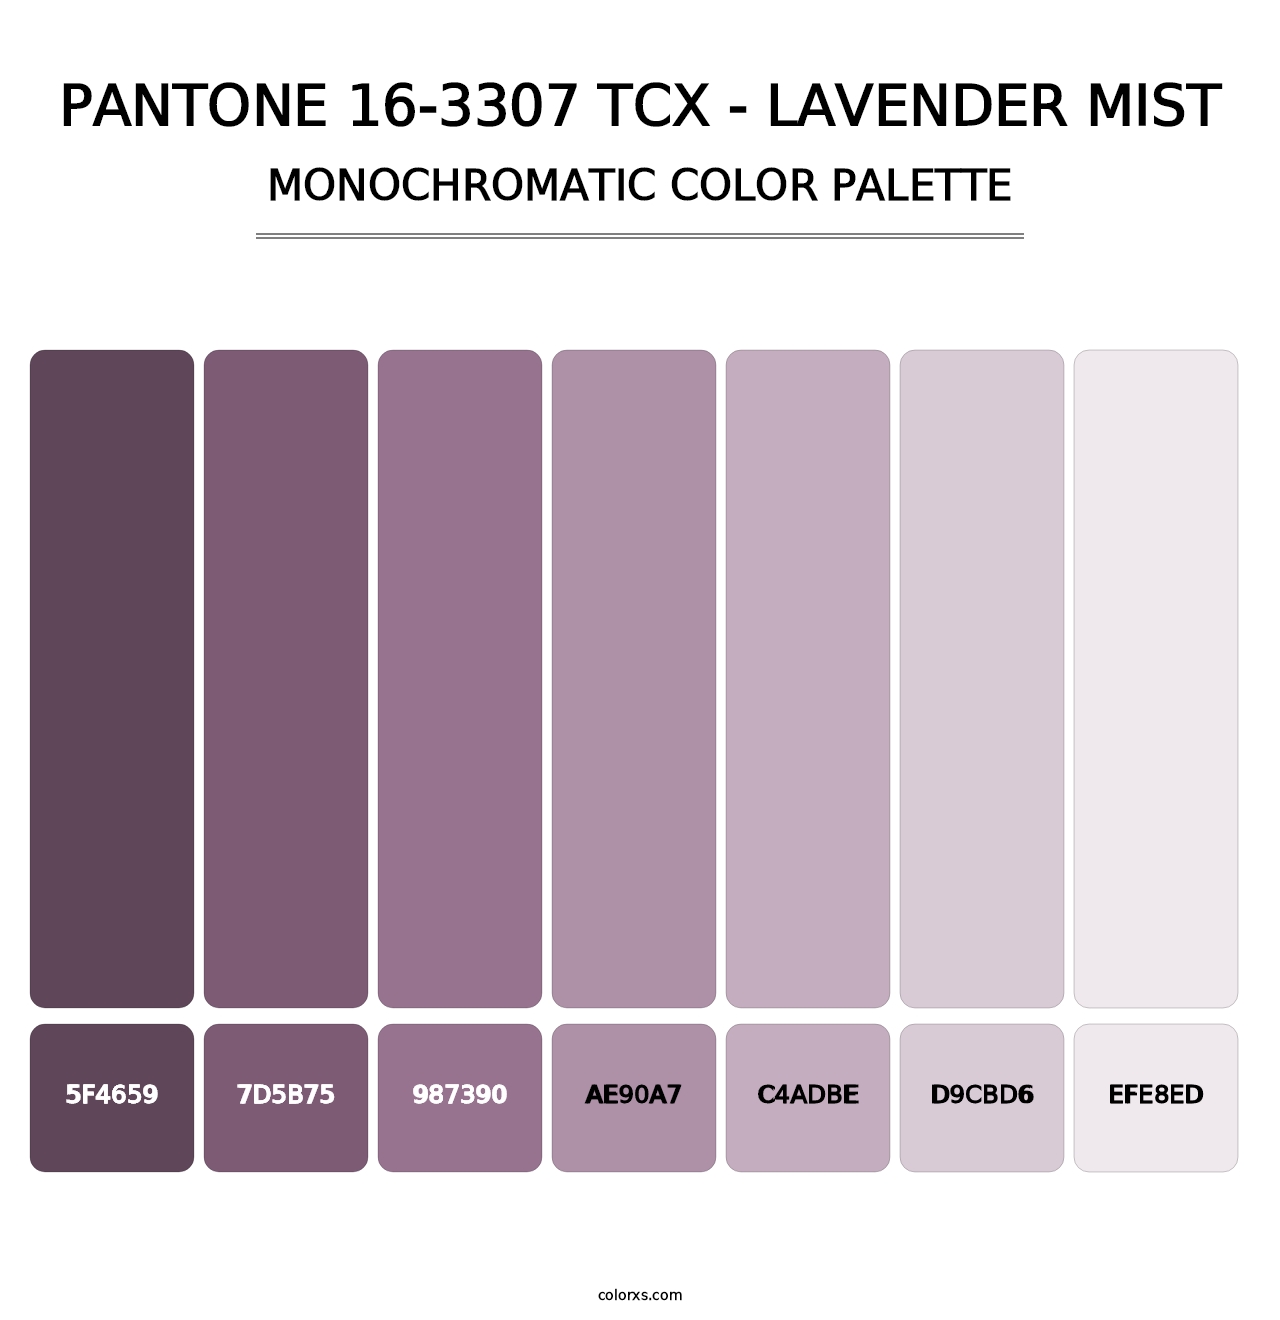 PANTONE 16-3307 TCX - Lavender Mist - Monochromatic Color Palette